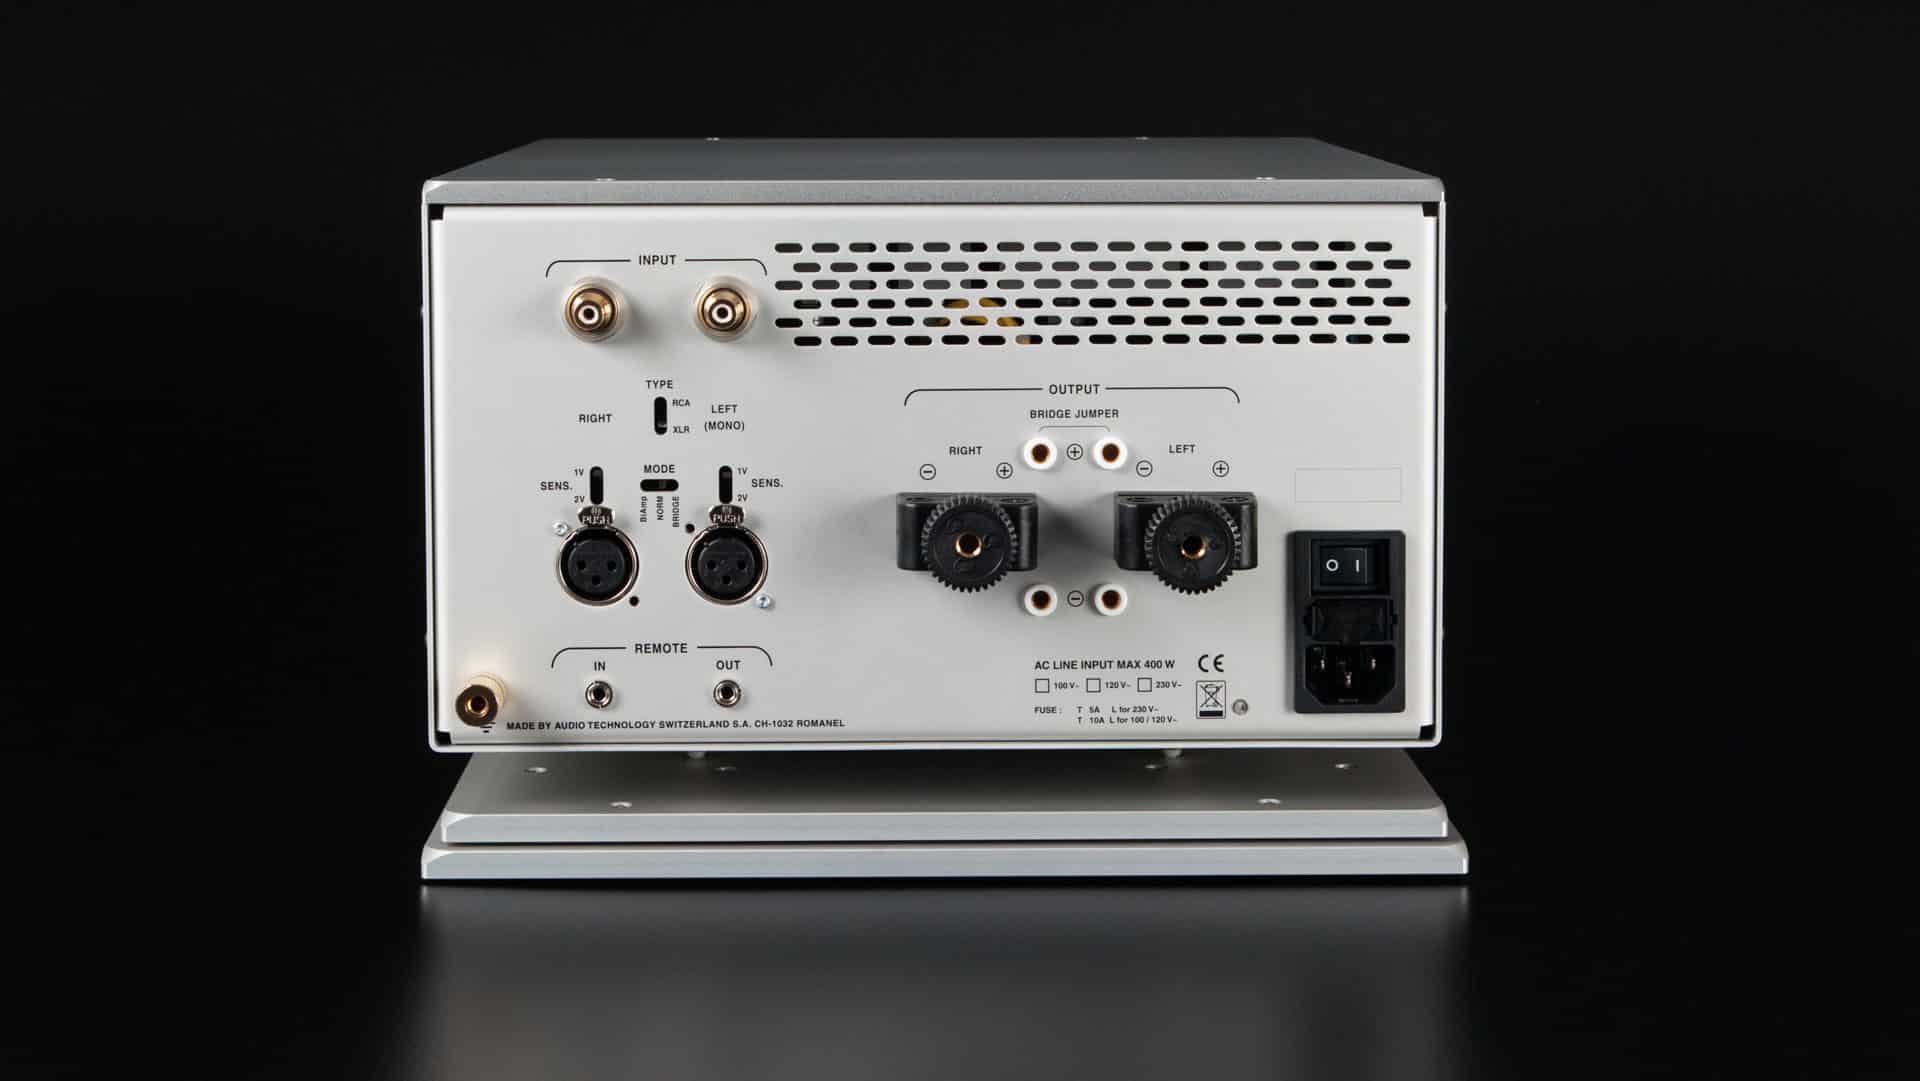 Nagra Classic Amp Amplificador estéreo estado sólido Transistor Mosfet transformador mejor parte posterior vfs